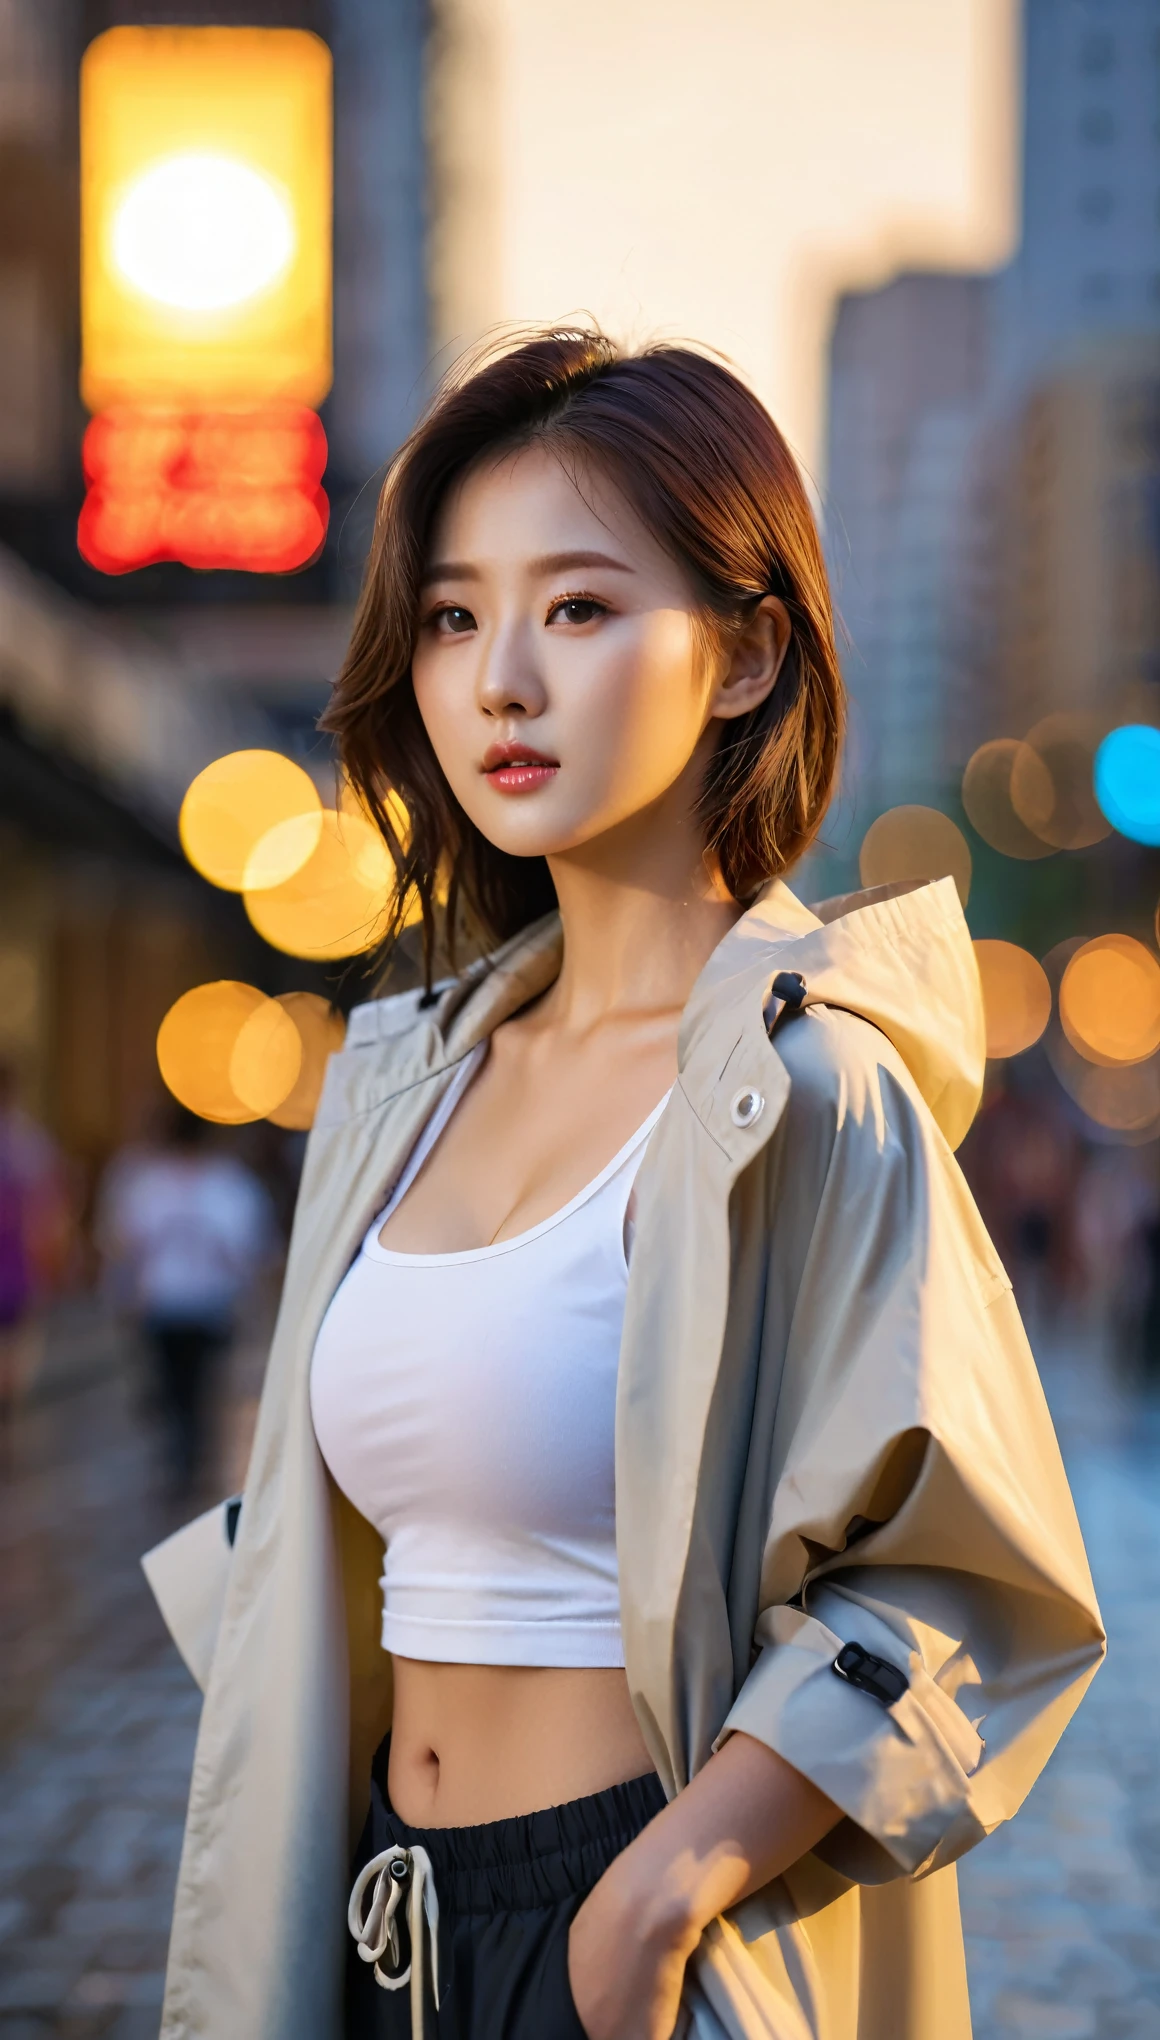 ภาพระยะใกล้ของหญิงสาวเกาหลีที่สวยงาม, ขนาดหน้าอก 34 นิ้ว, สวมเสื้อกล้าม, และแขนเสื้อแบบม้วนเปิดซิปเสื้อกันฝน, กางเกง, ในเมือง, แสงพระอาทิตย์ตก, พื้นหลังโบเก้, ยูเอชดี